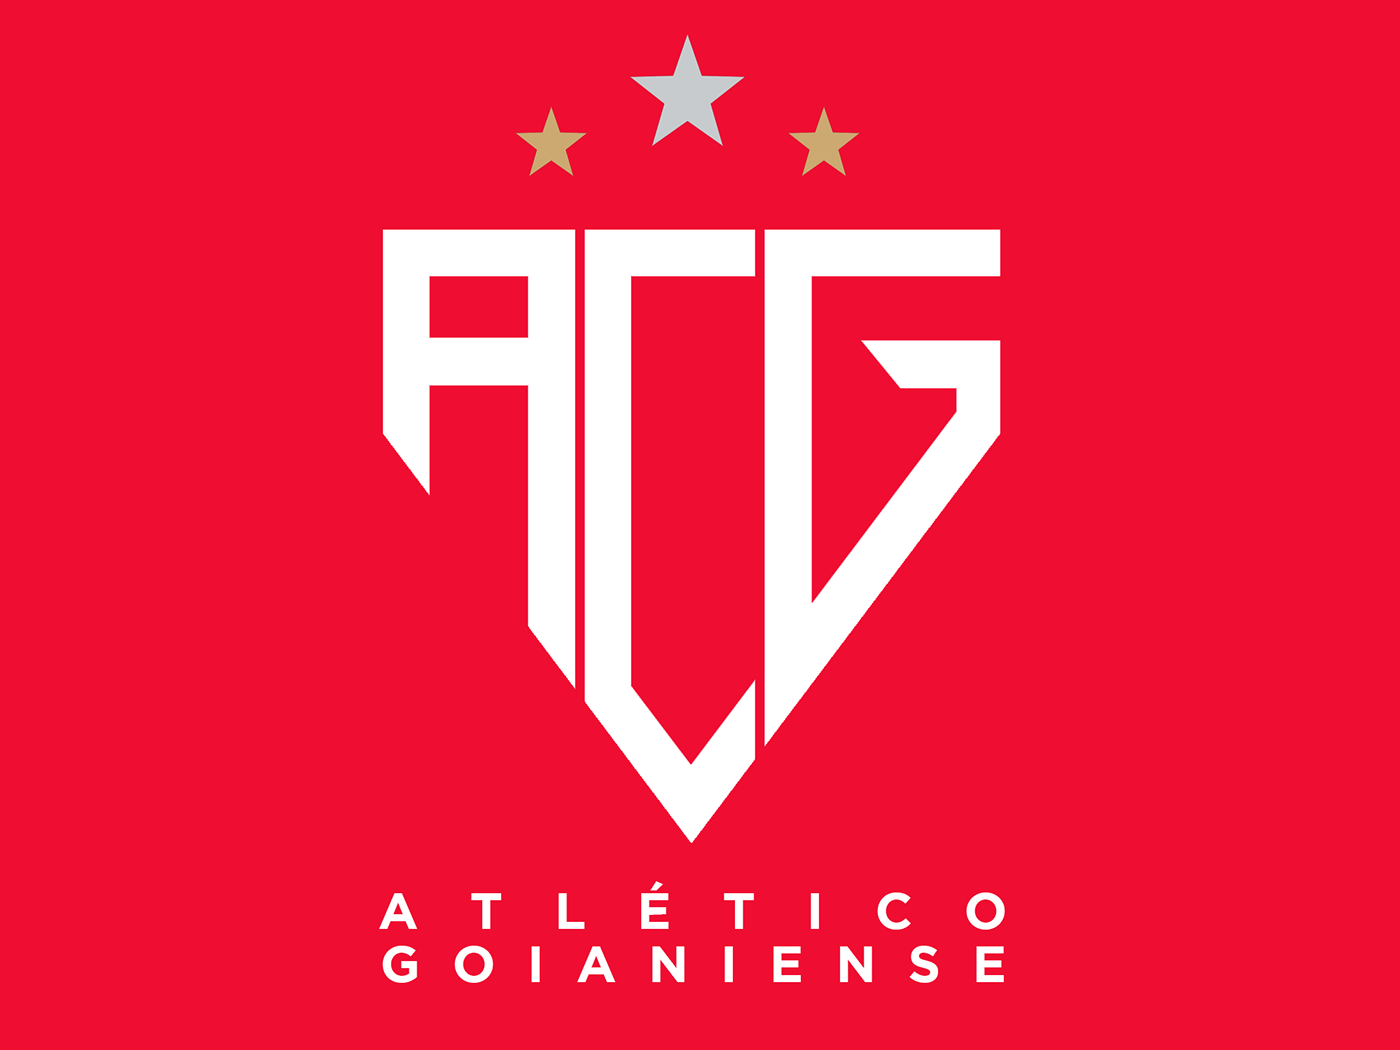 atletico Atlético Goianiense futebol branding  design logo escudo soccer logo brasileirão atlético clube goianiense